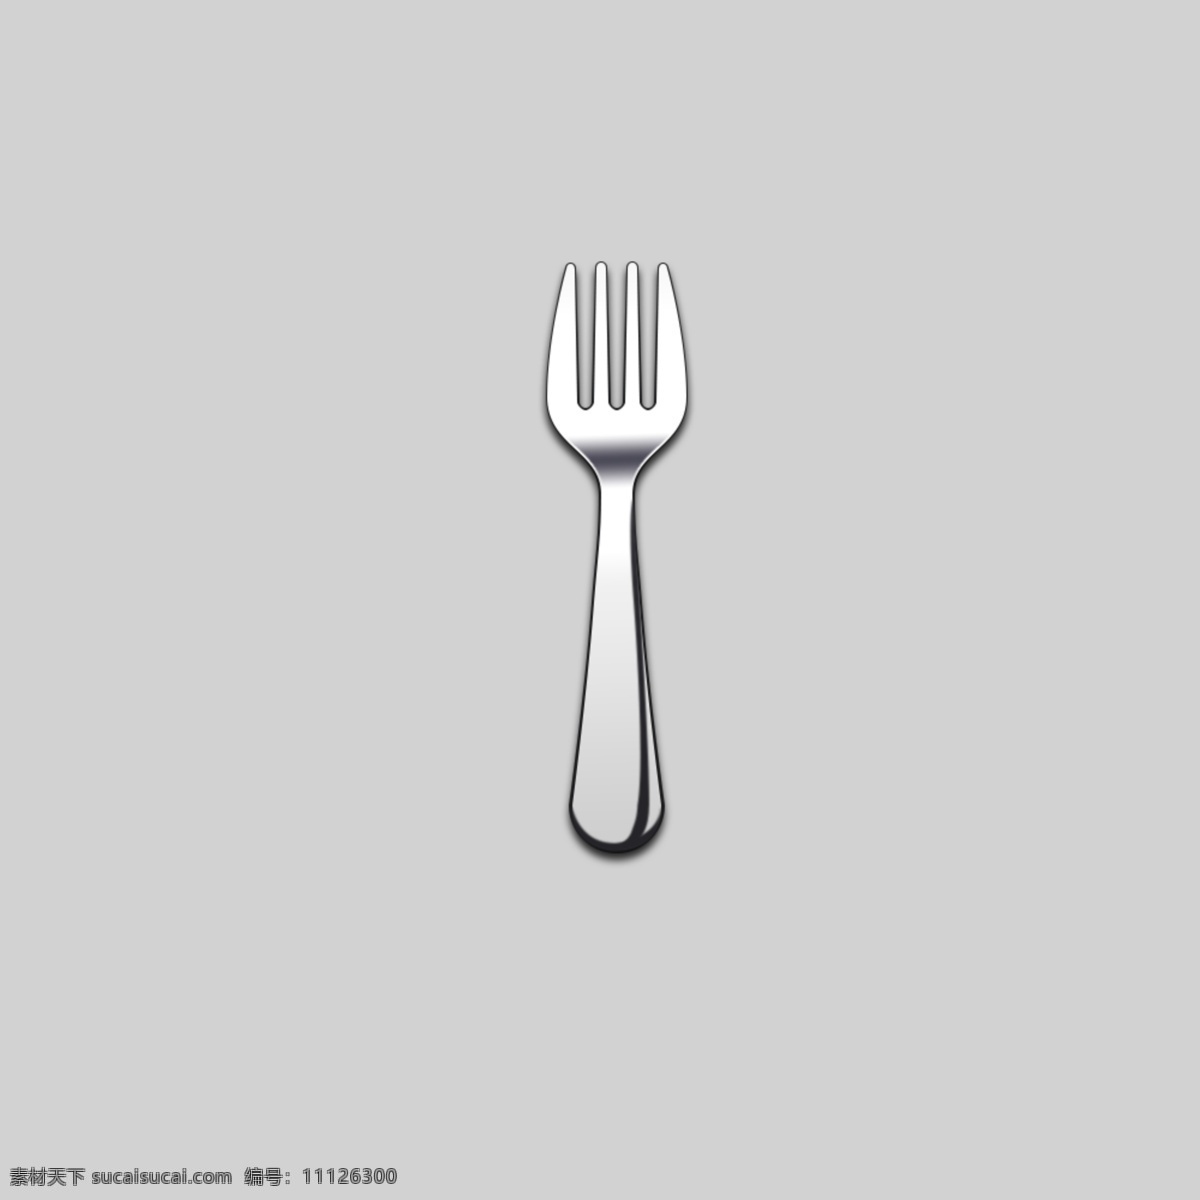 叉子图案 叉子 银器 刀叉 餐具 银制品